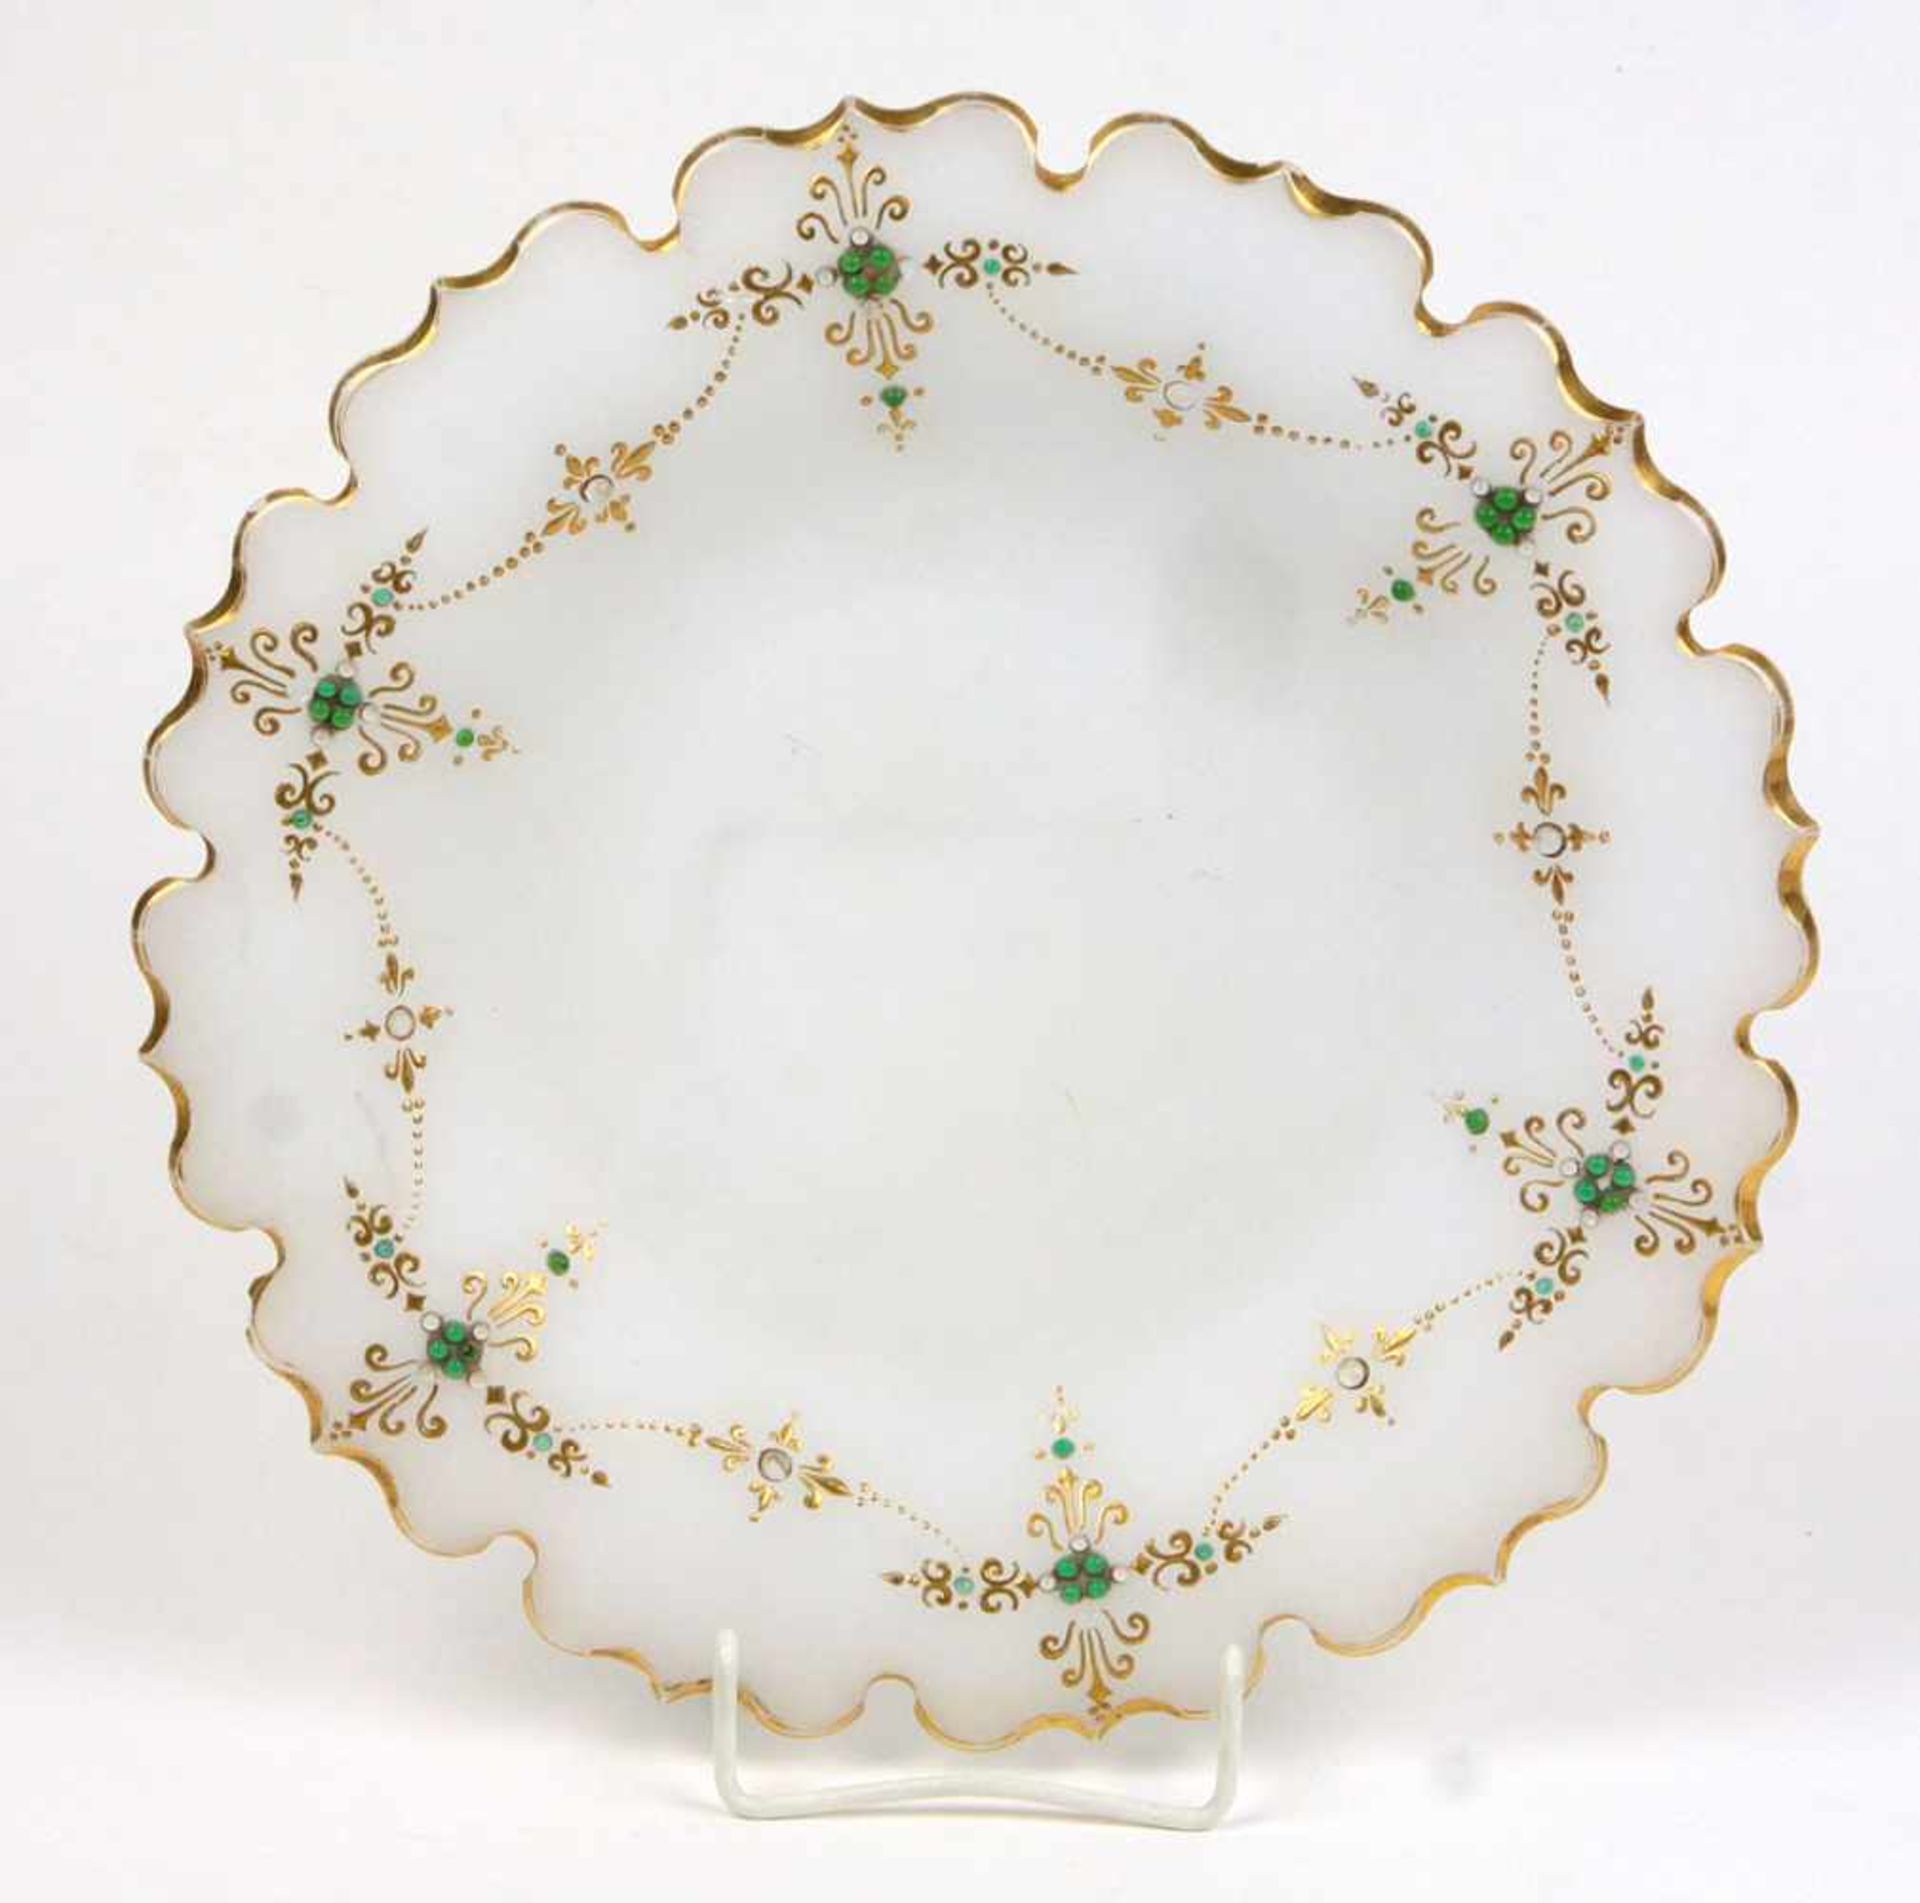 Glasschale um 1860weißopakes Glas mundgeblasen, ausschwingende flache Schalenform mit gewellt